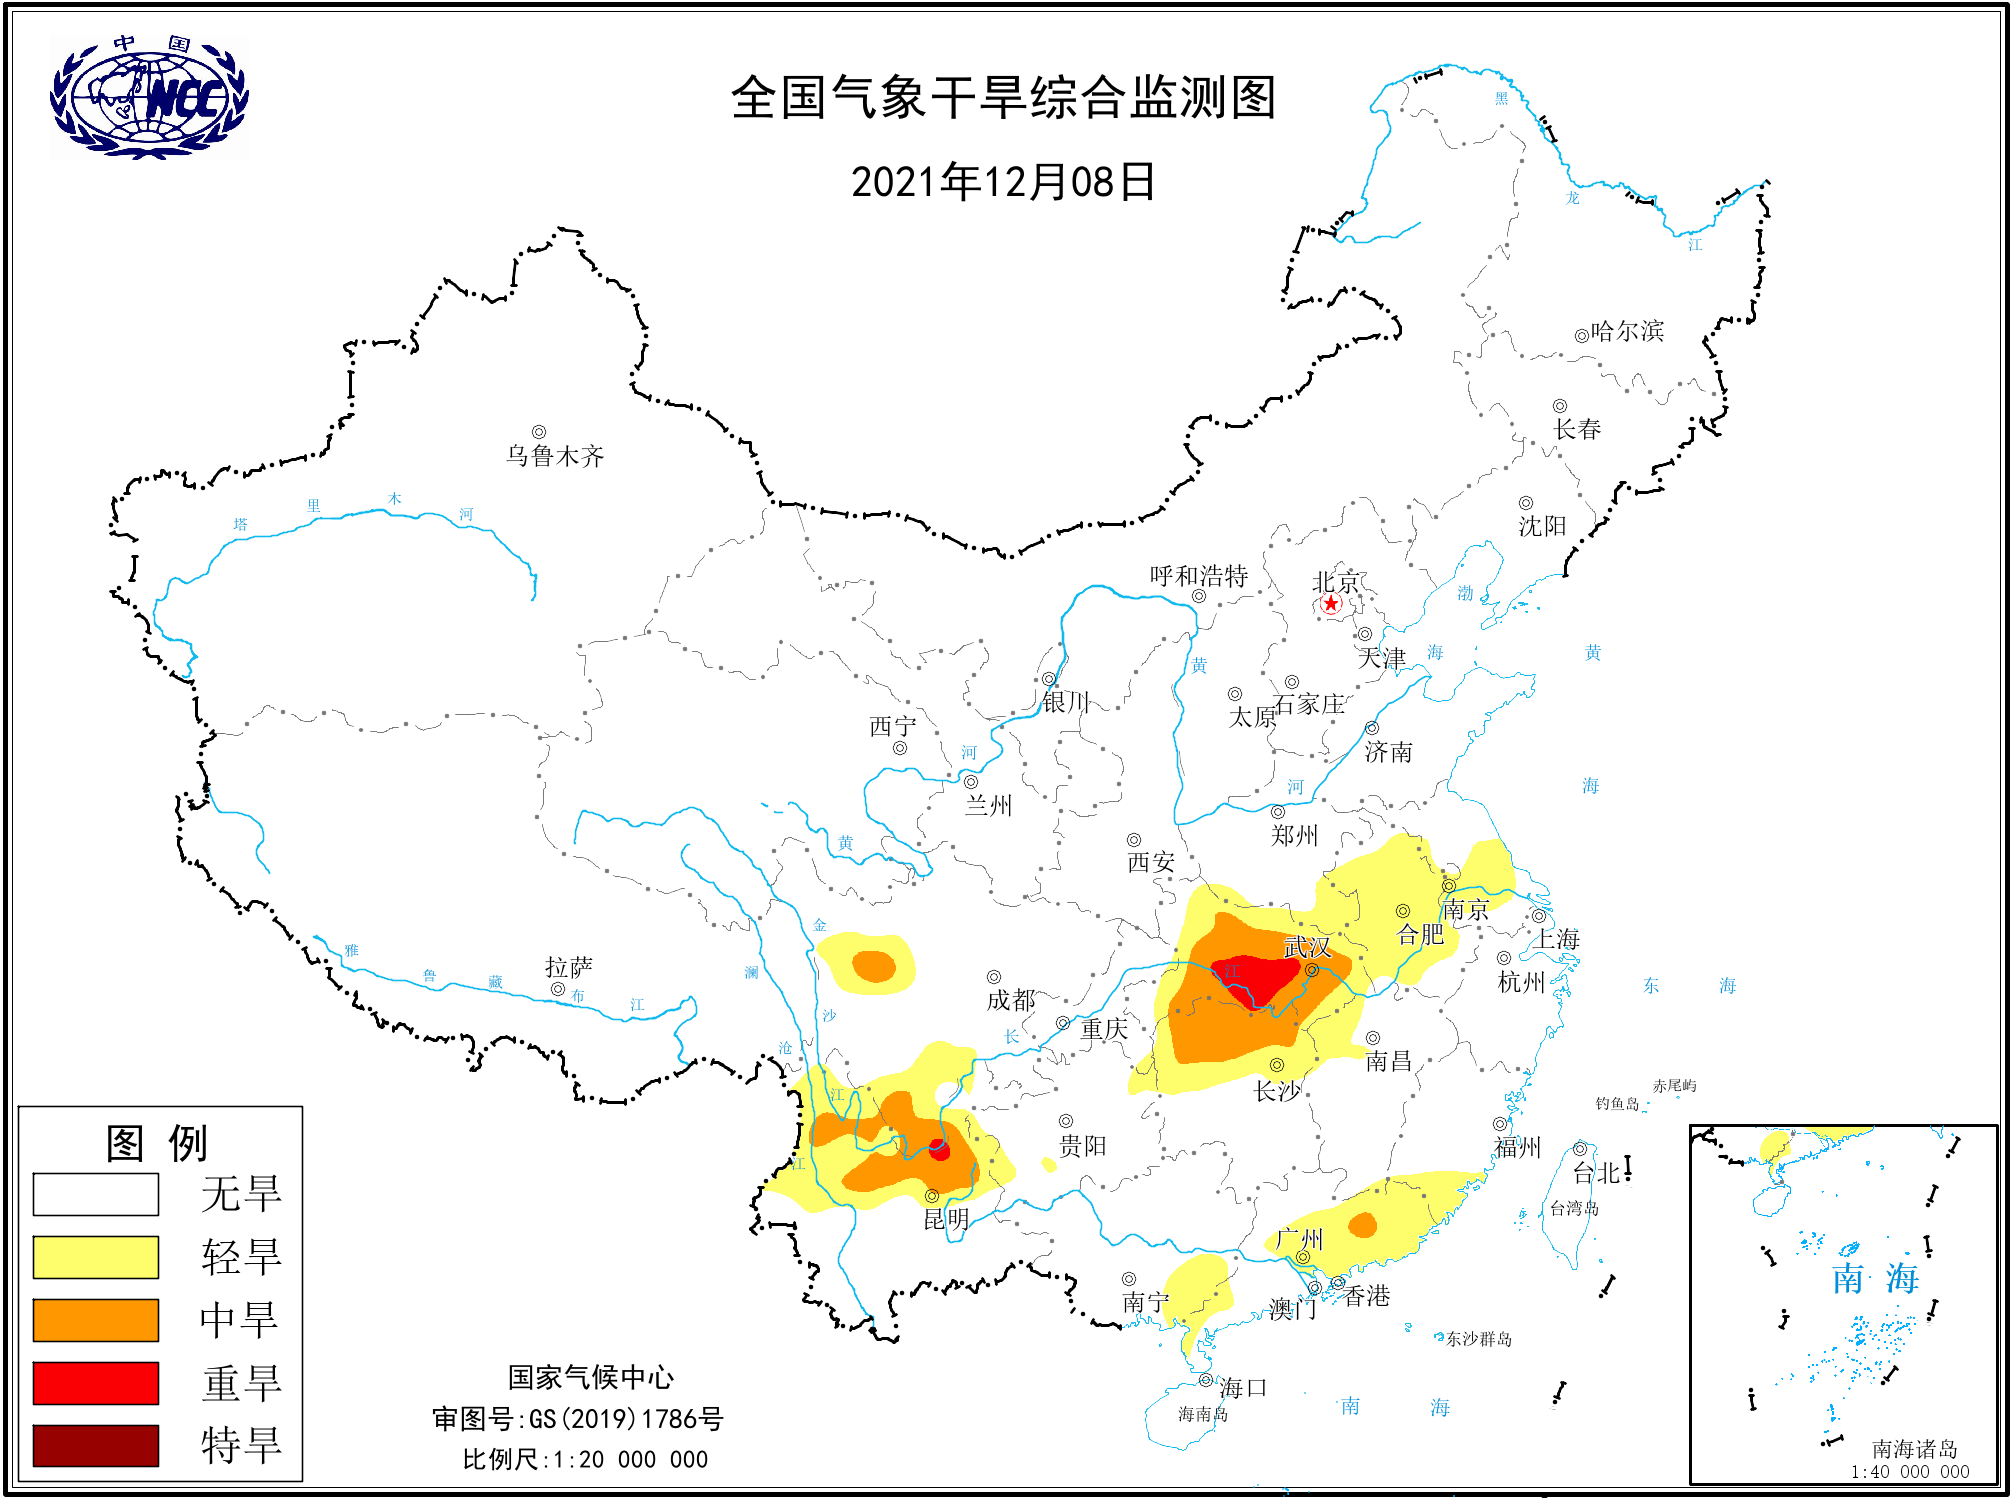 深圳遭遇建市以来最严重缺水缺口约100万立方米日